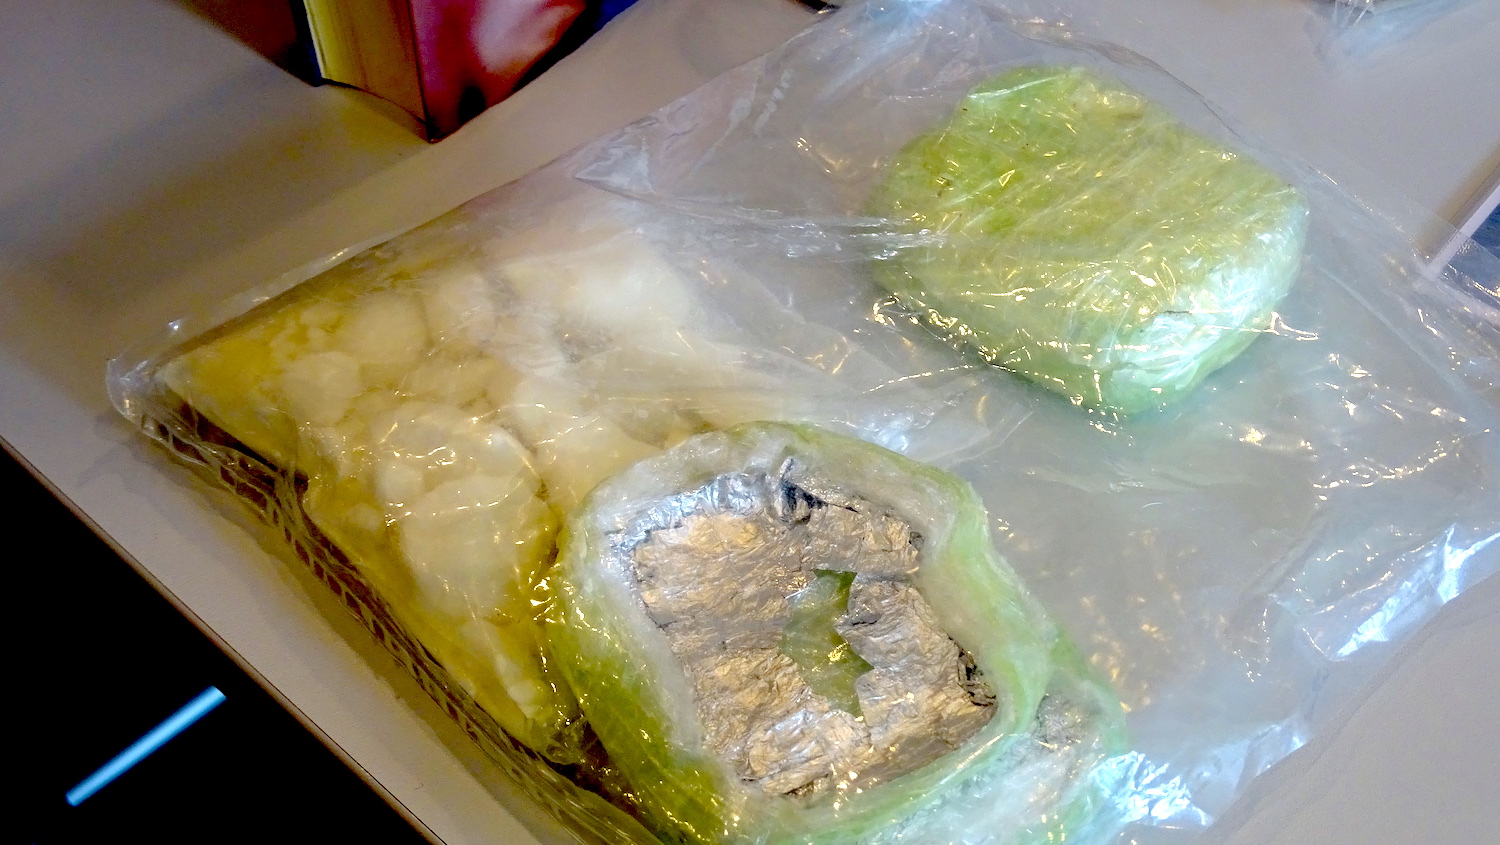 Was aussah wie eine Ladung Eisbergsalate, bargt eine ordentliche Portion illegaler Substanzen.